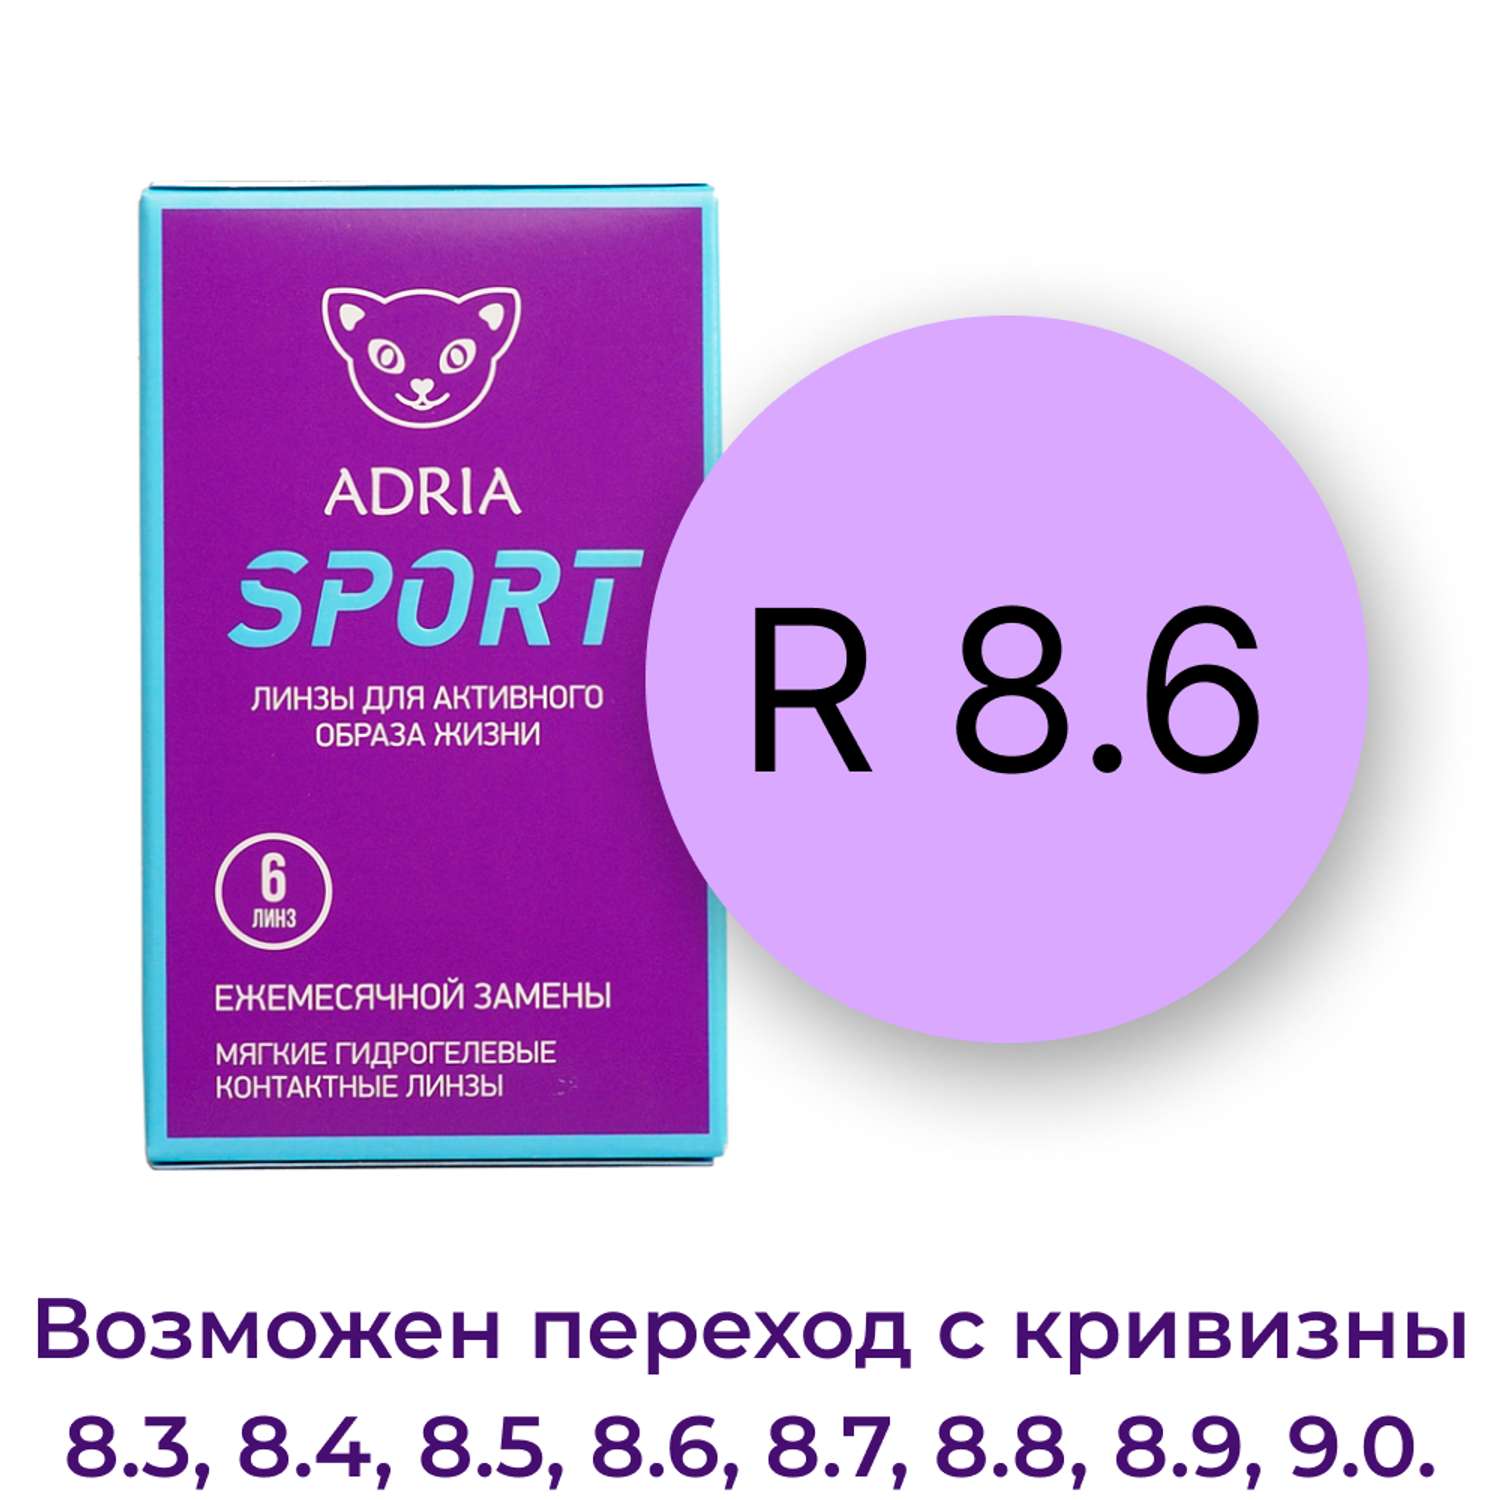 Контактные линзы ADRIA Sport 6 линз R 8.6 -4.25 - фото 3